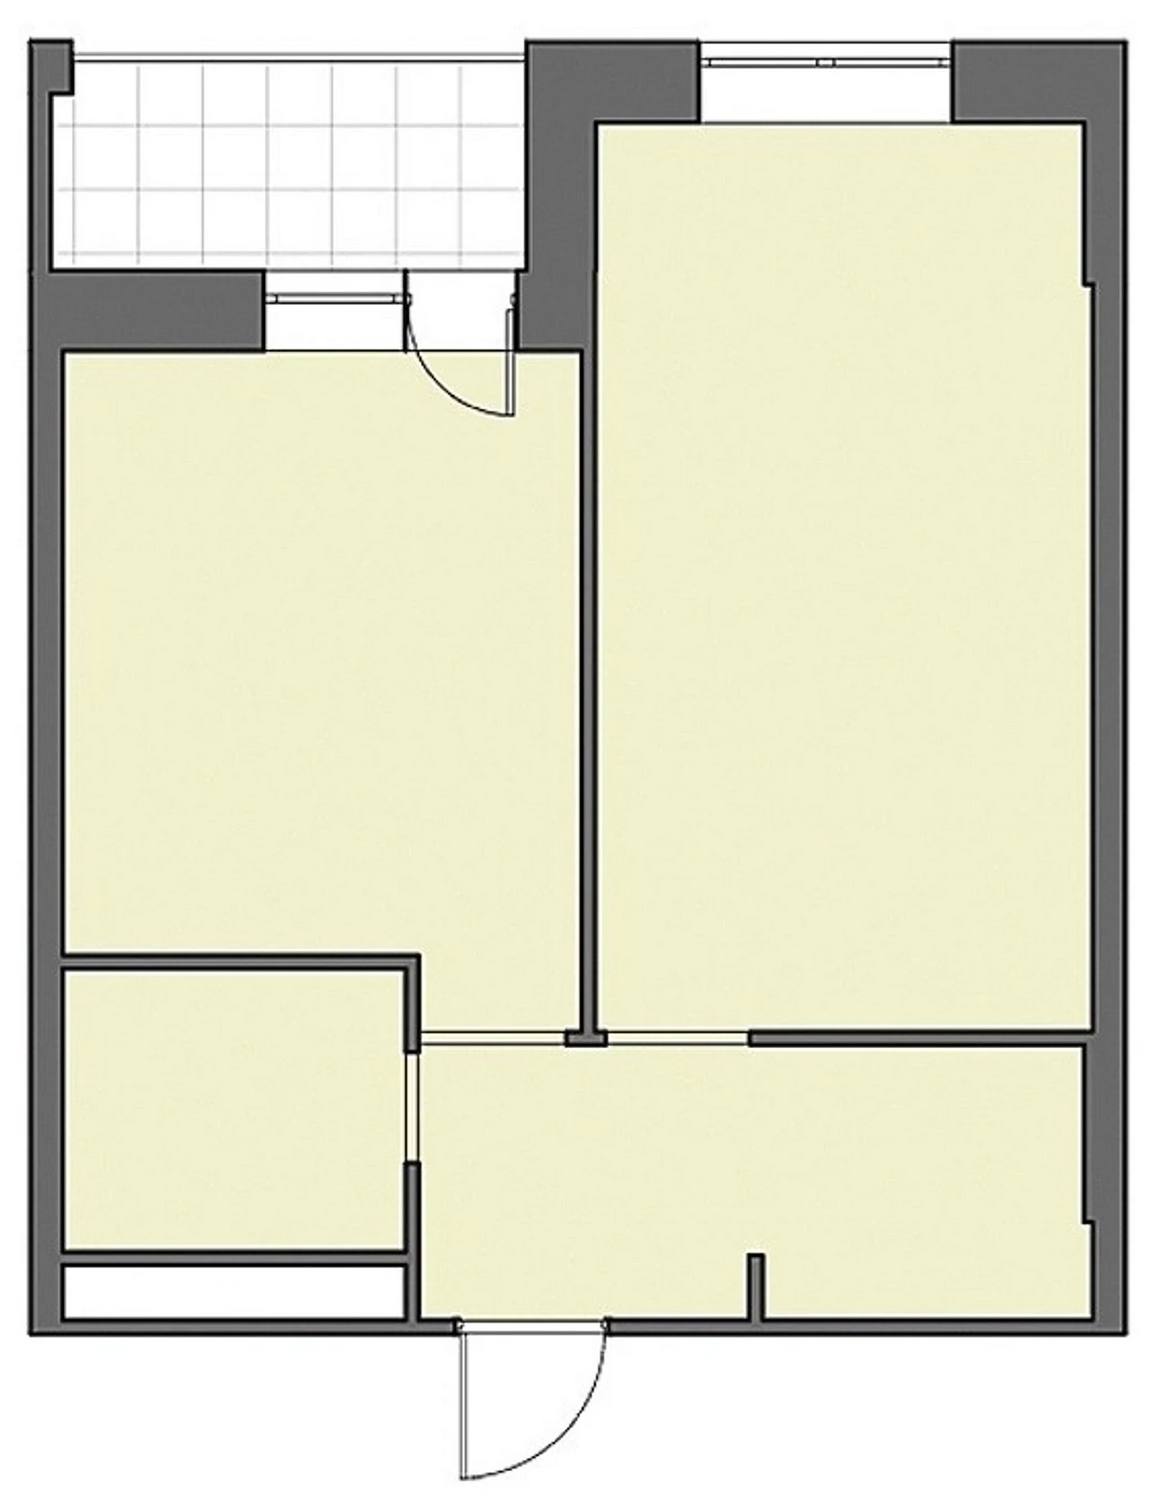 Cải tạo căn hộ 46m² với nội thất màu xanh lam cho vẻ đẹp yên bình, tinh tế của cặp vợ chồng son - Ảnh 2